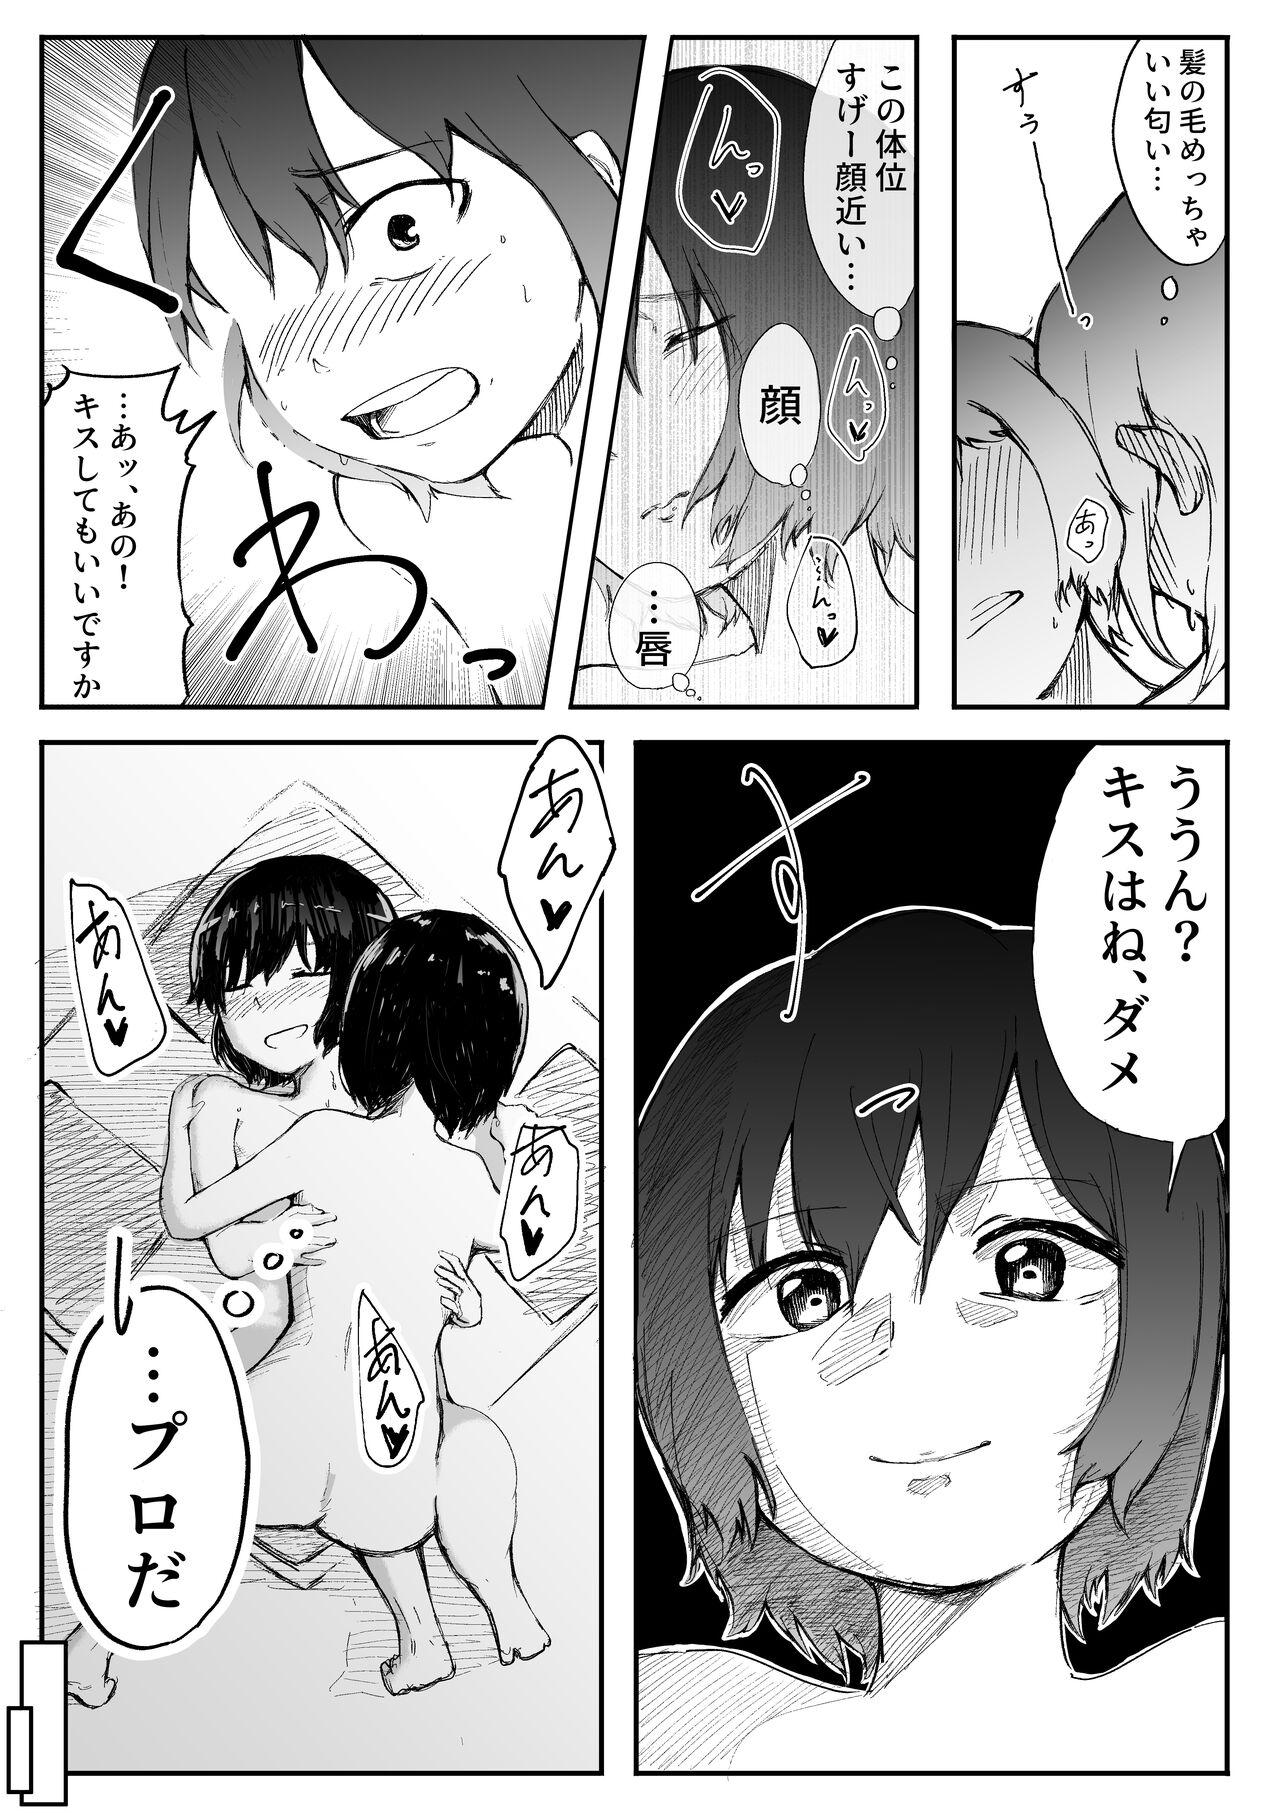 【風俗レポ漫画】飛田新地で童貞を捨てた話 24